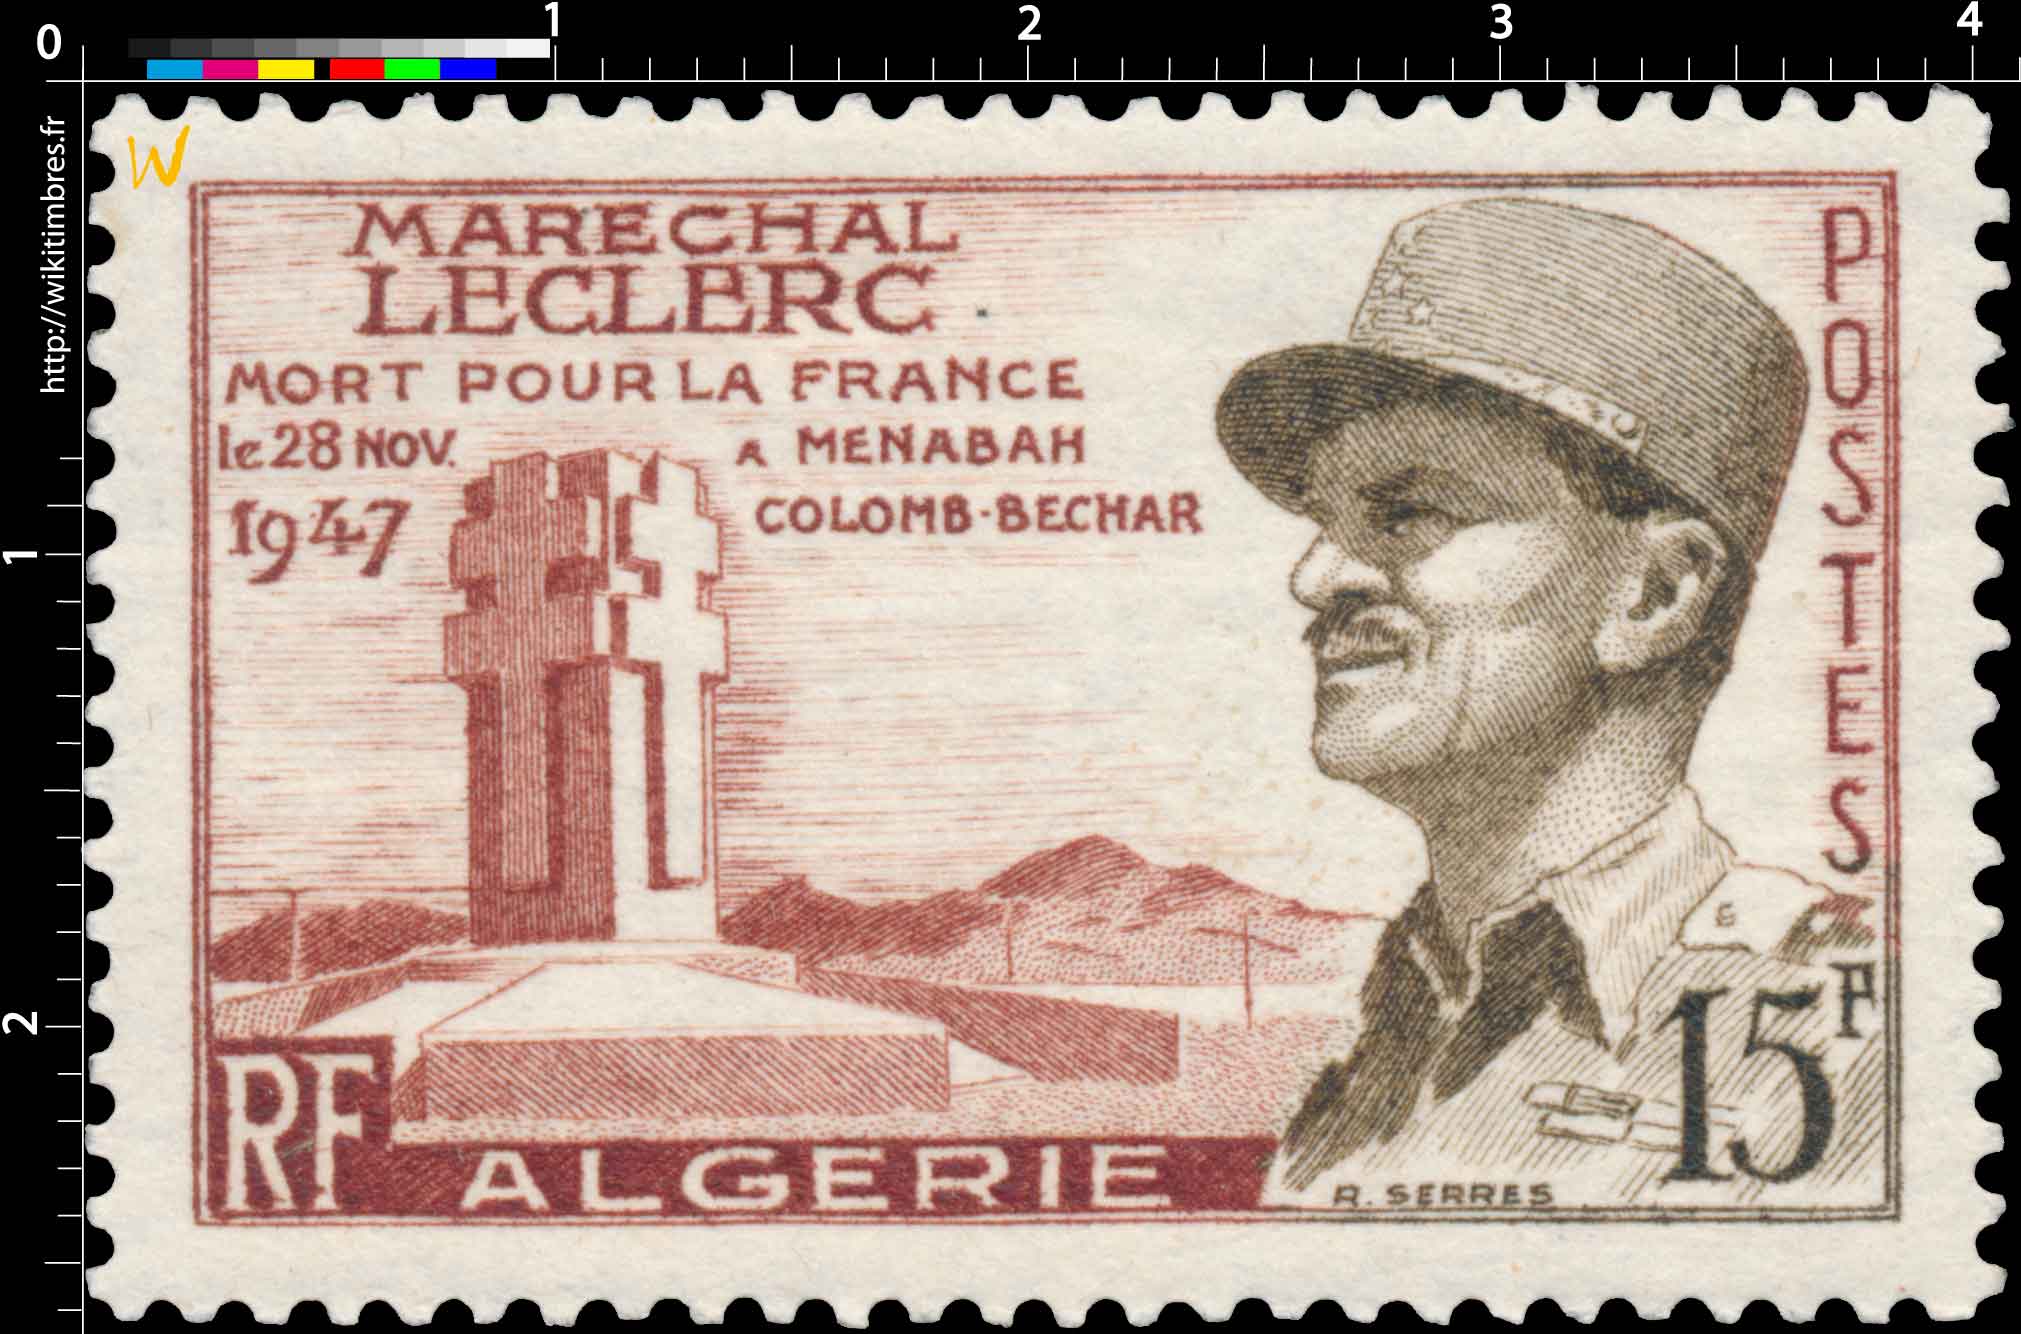 Algérie - Maréchal Leclerc mort pour le France le 28 Nov 1947 à Menabah Colomb-Bechar